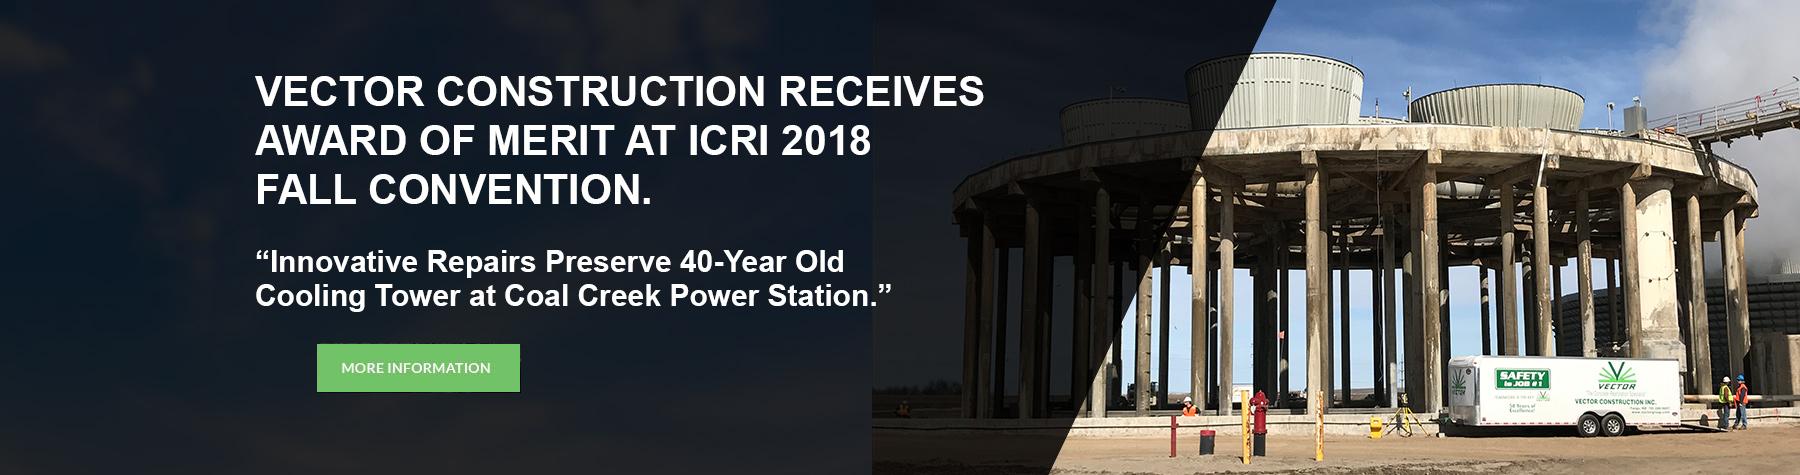 ICRI Award of Merit 2018